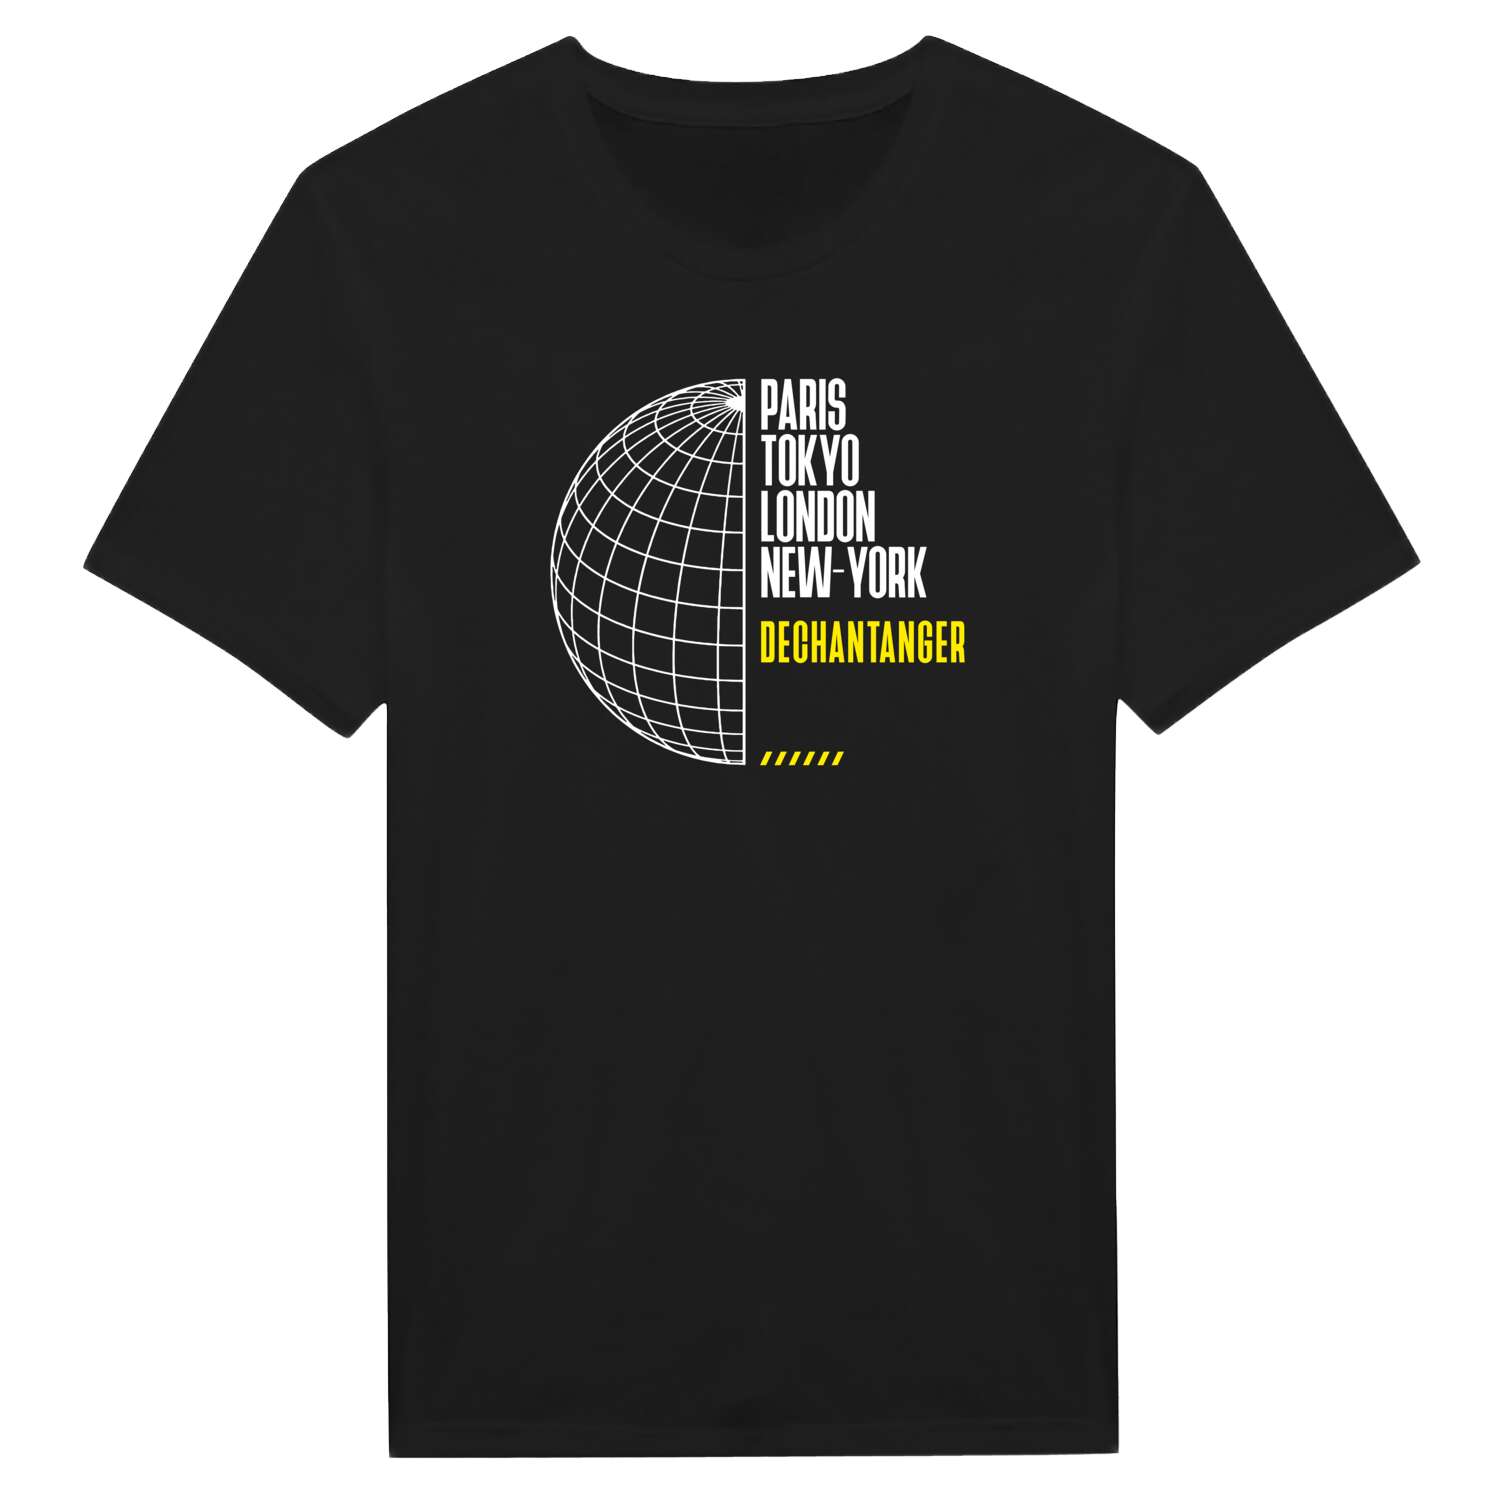 Dechantanger T-Shirt »Paris Tokyo London«